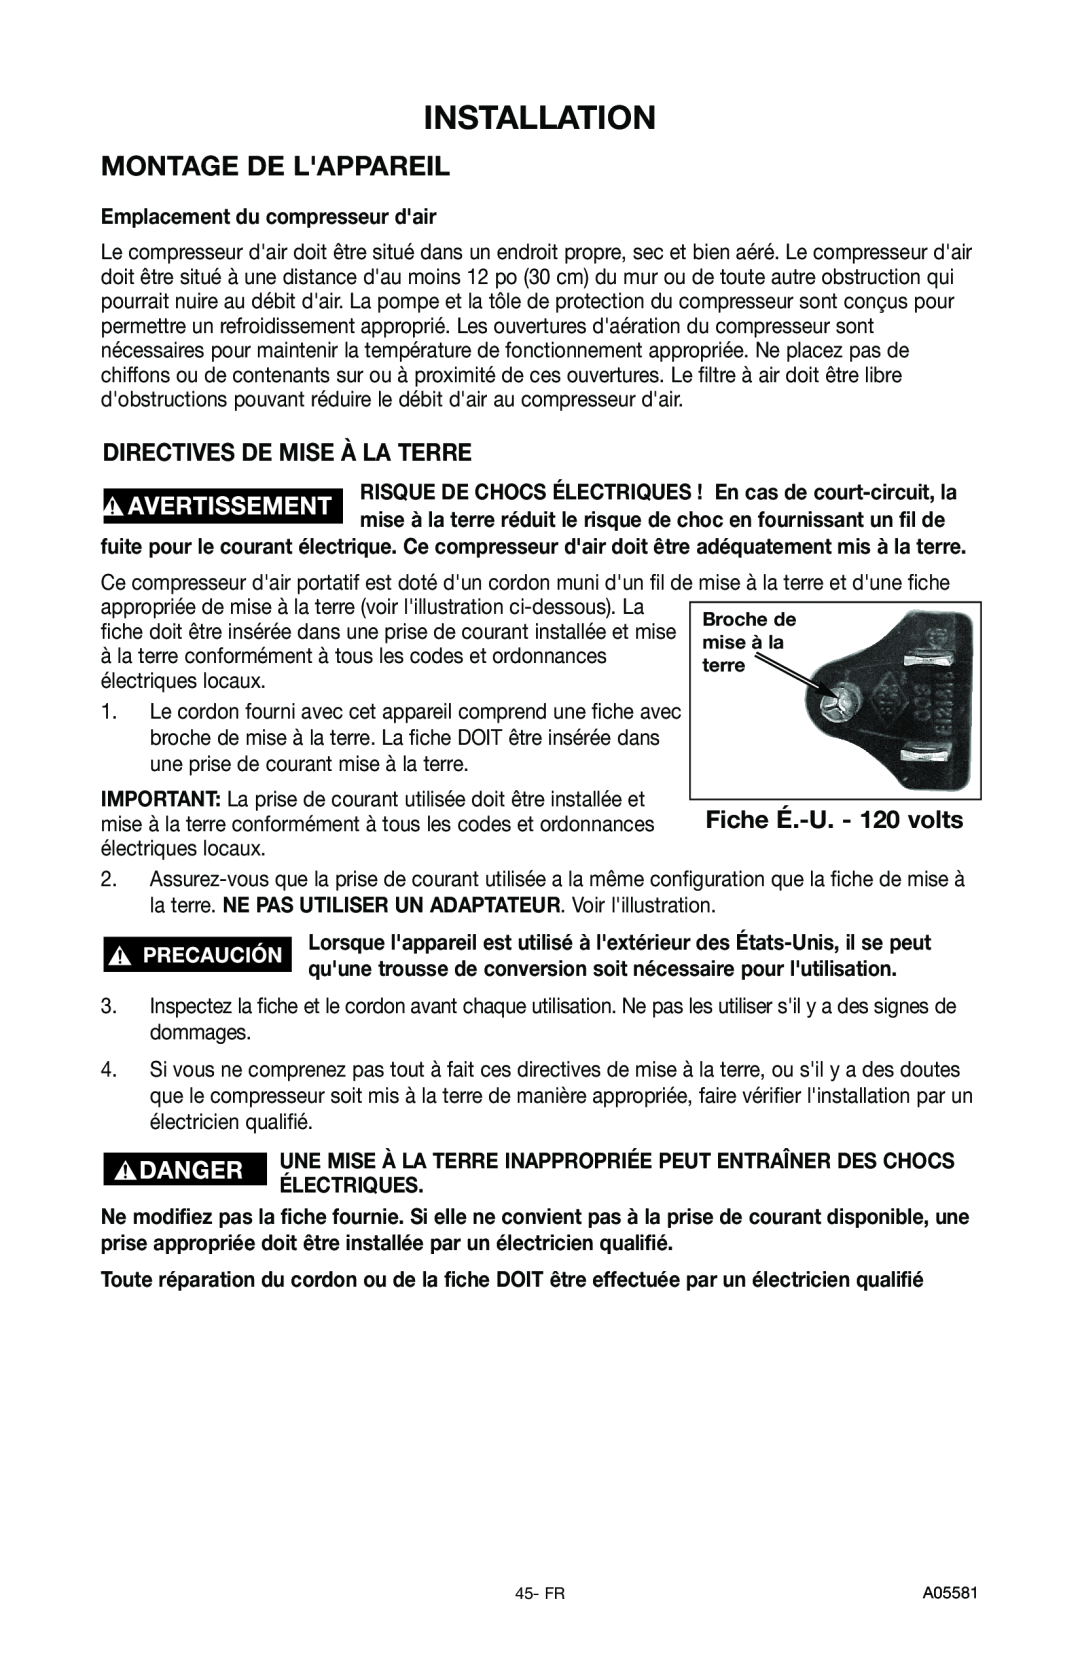 Delta CP201, A05581 Montage De Lappareil, Directives De Mise À La Terre, Installation, Emplacement du compresseur dair 